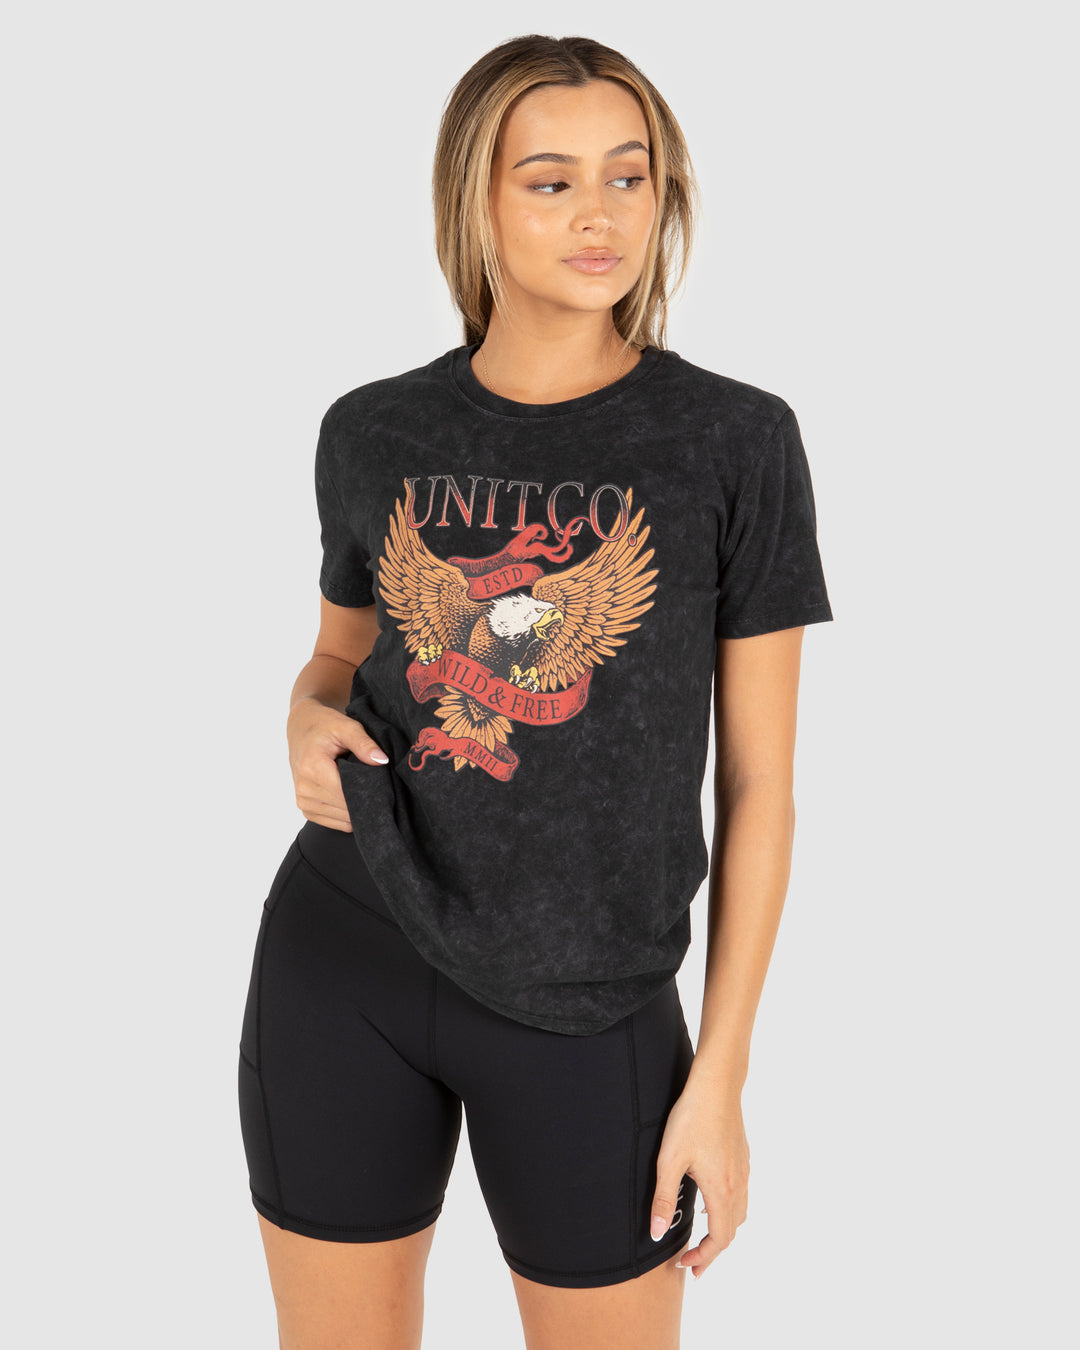 UNIT Kruger Ladies T-Shirt